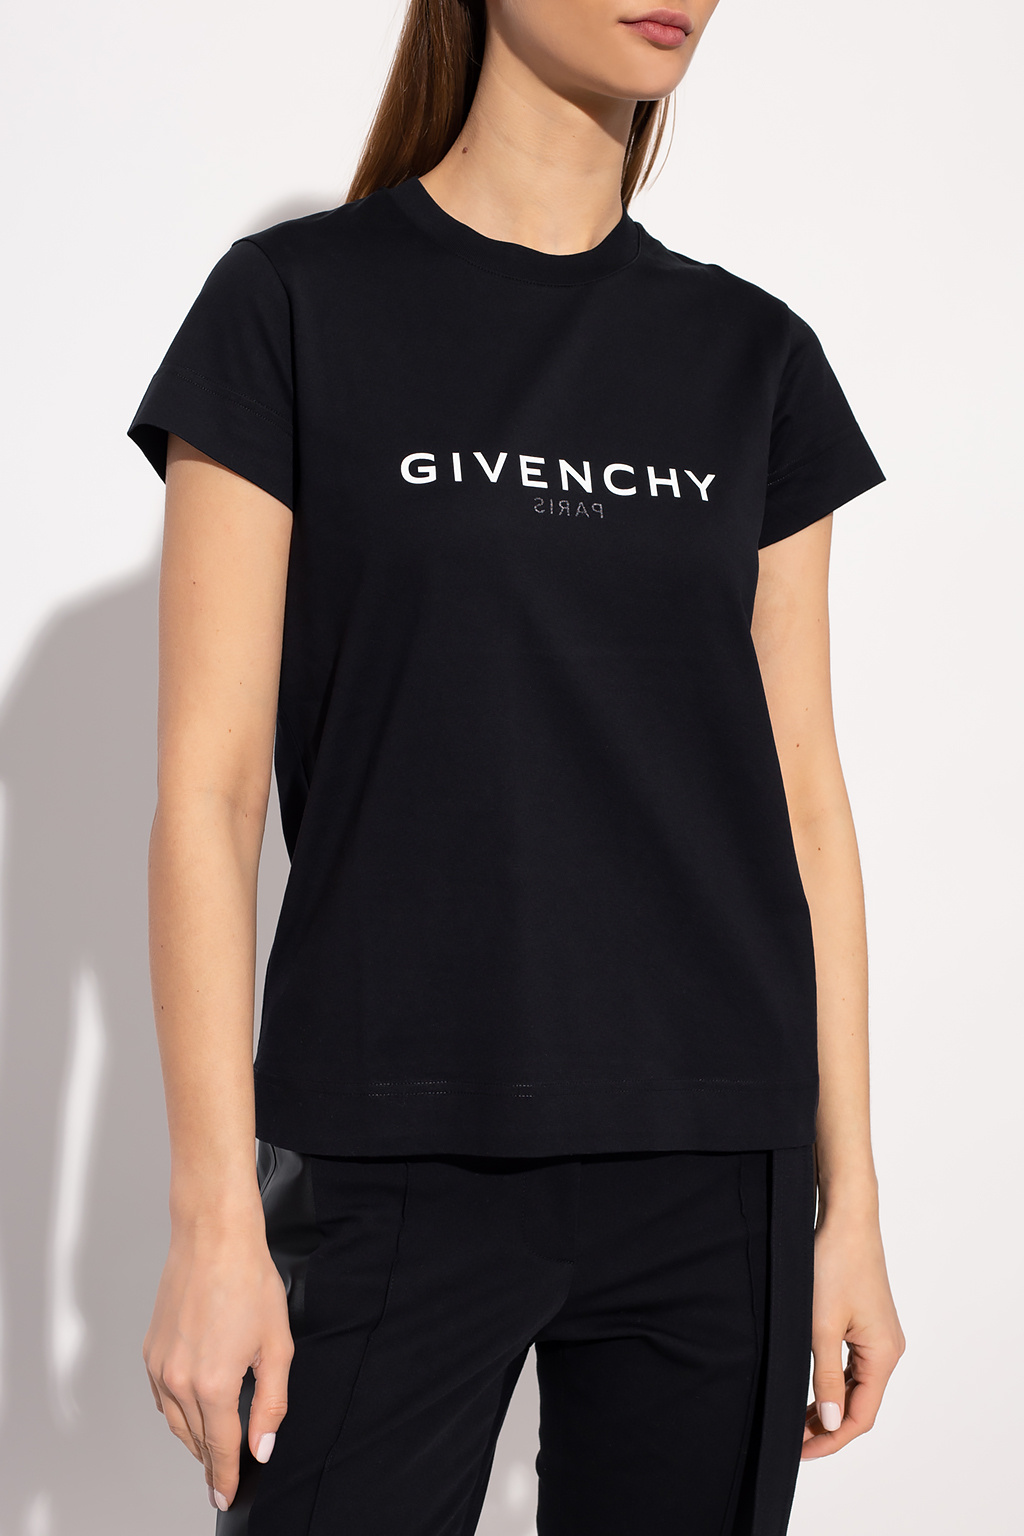 Givenchy Givenchy Maquillatge Llavis